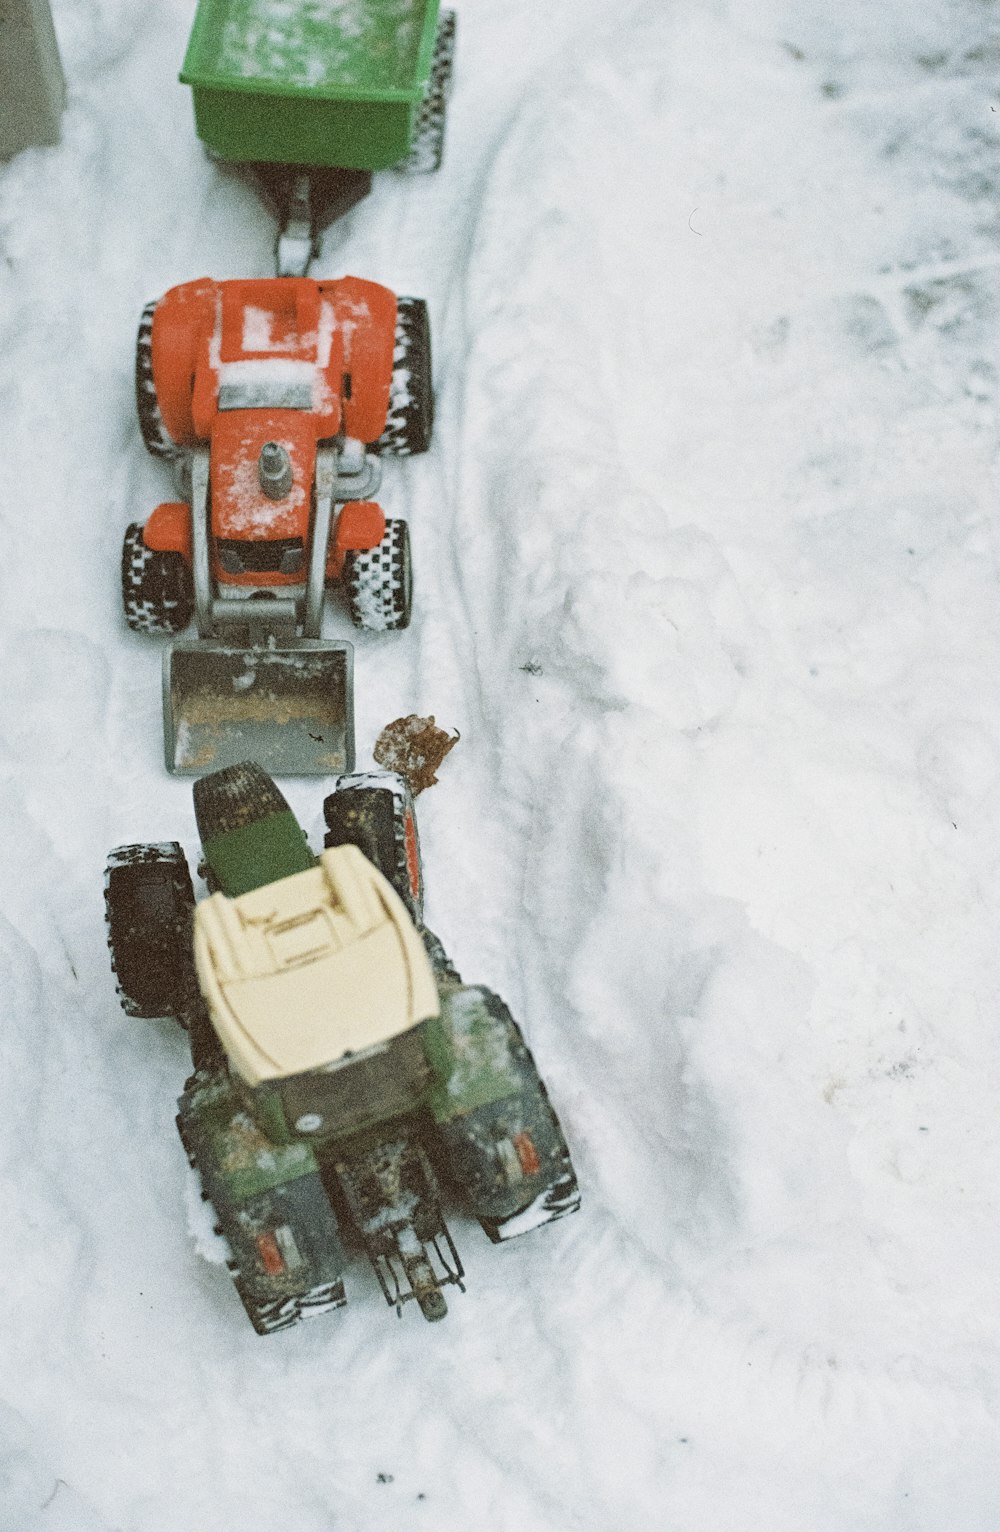 Trois jouets de véhicules rouges sur la neige